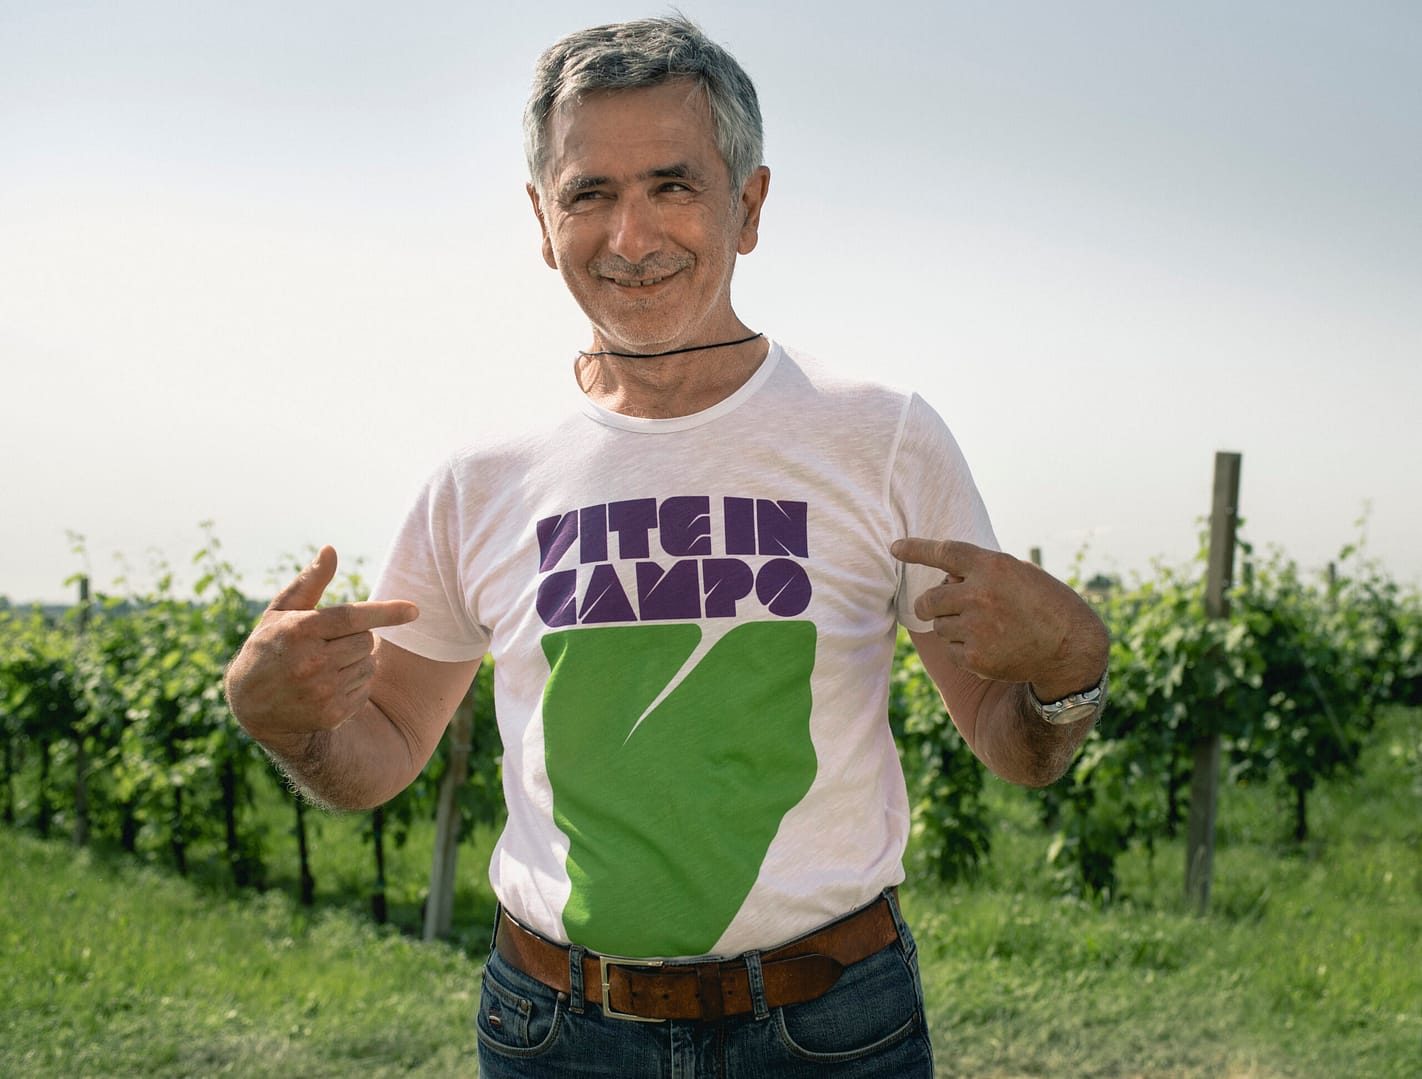 Torna “Vite in Campo”, l’evento dedicato al mondo agricolo e alle soluzioni innovative per affrontare le sfide del settore vitivinicolo.